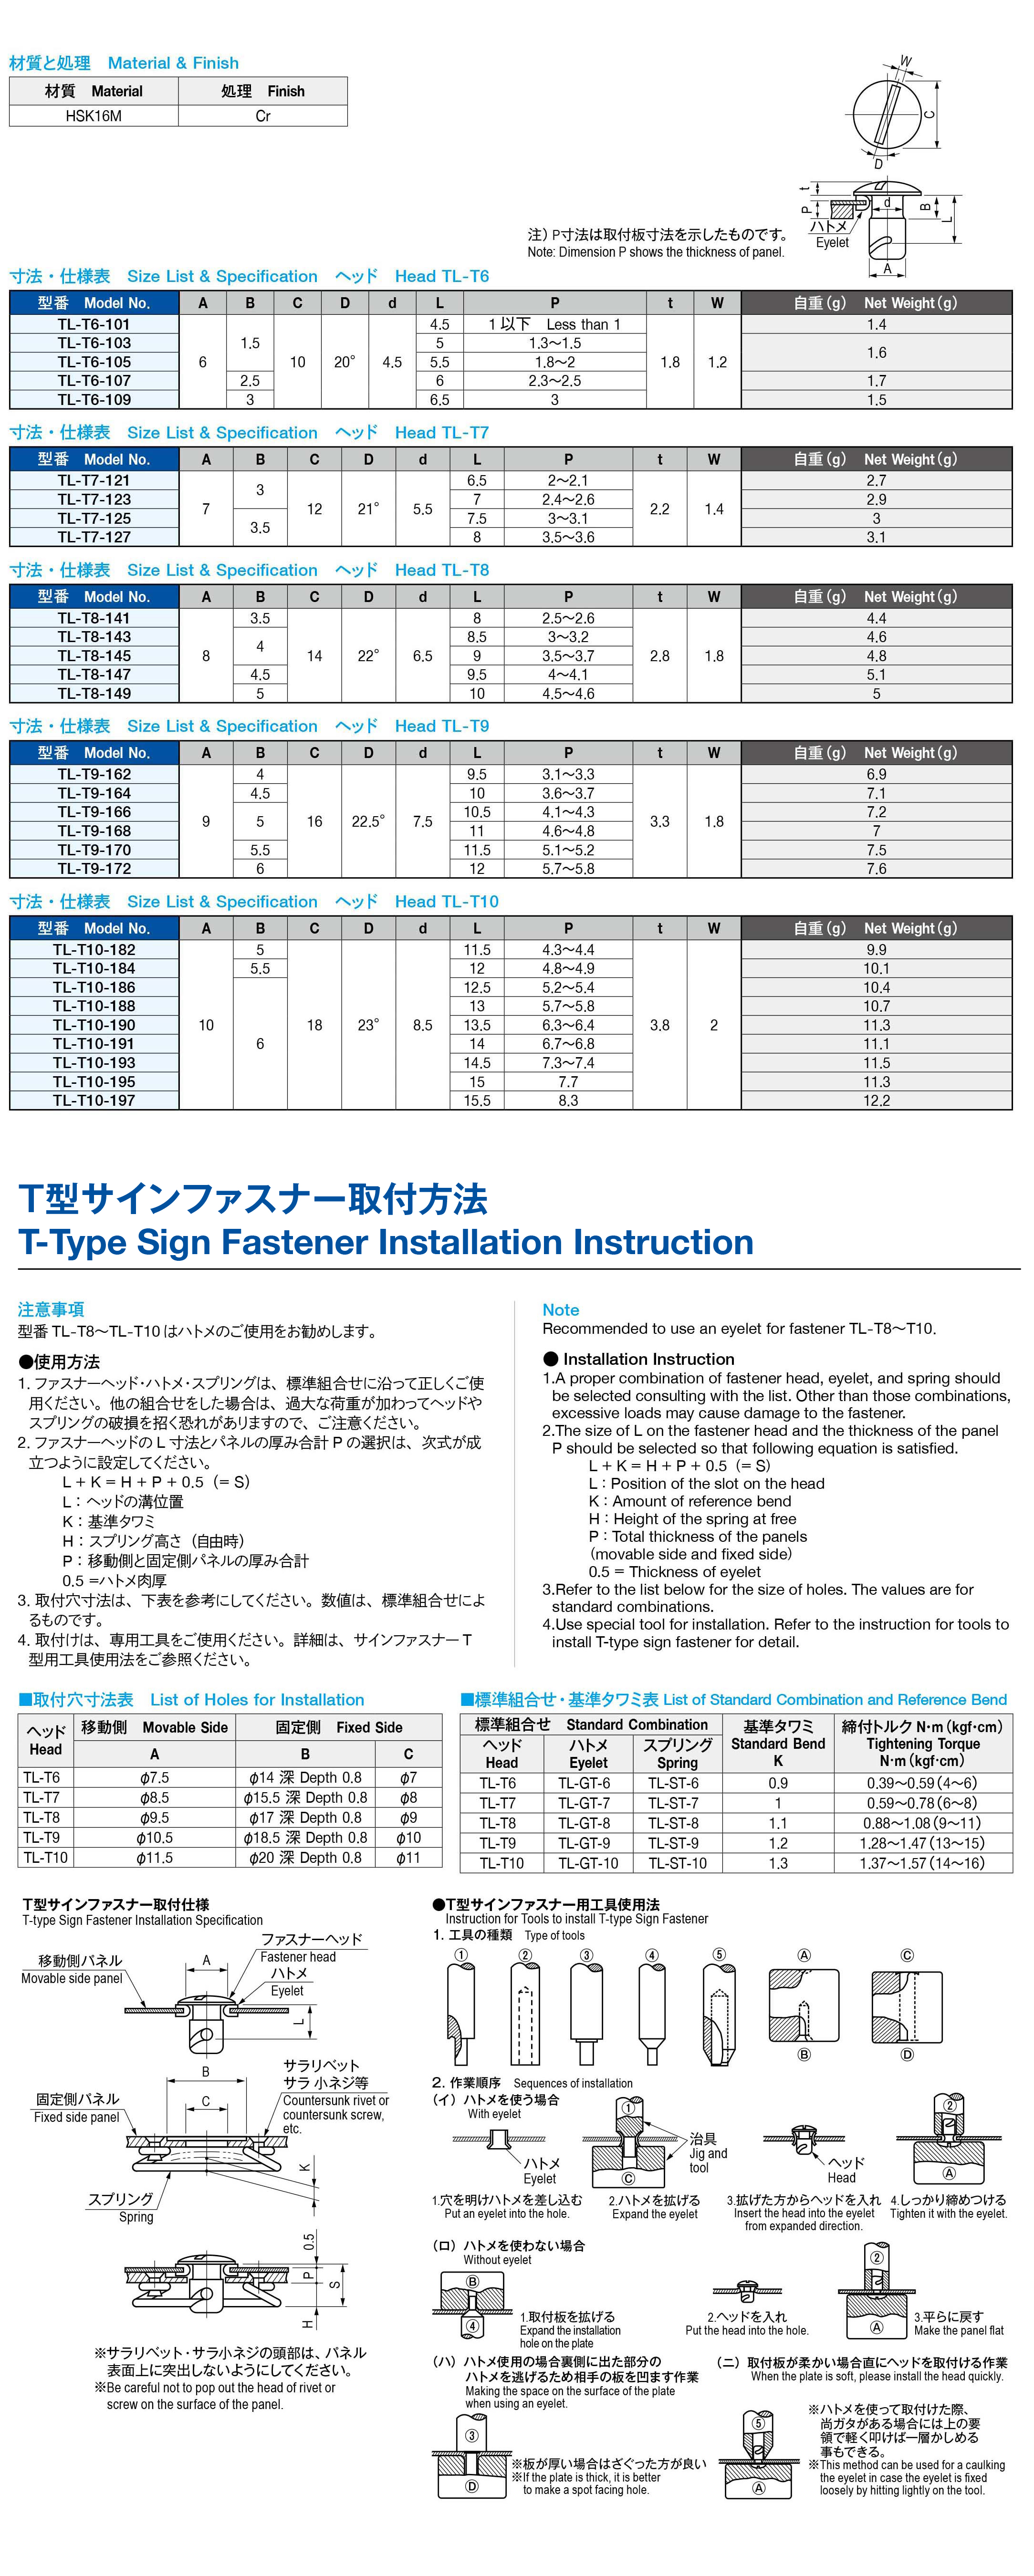 栃木屋EC_T型サインファスナー(ヘッド): キャッチ・ラッチ・ファスナー 